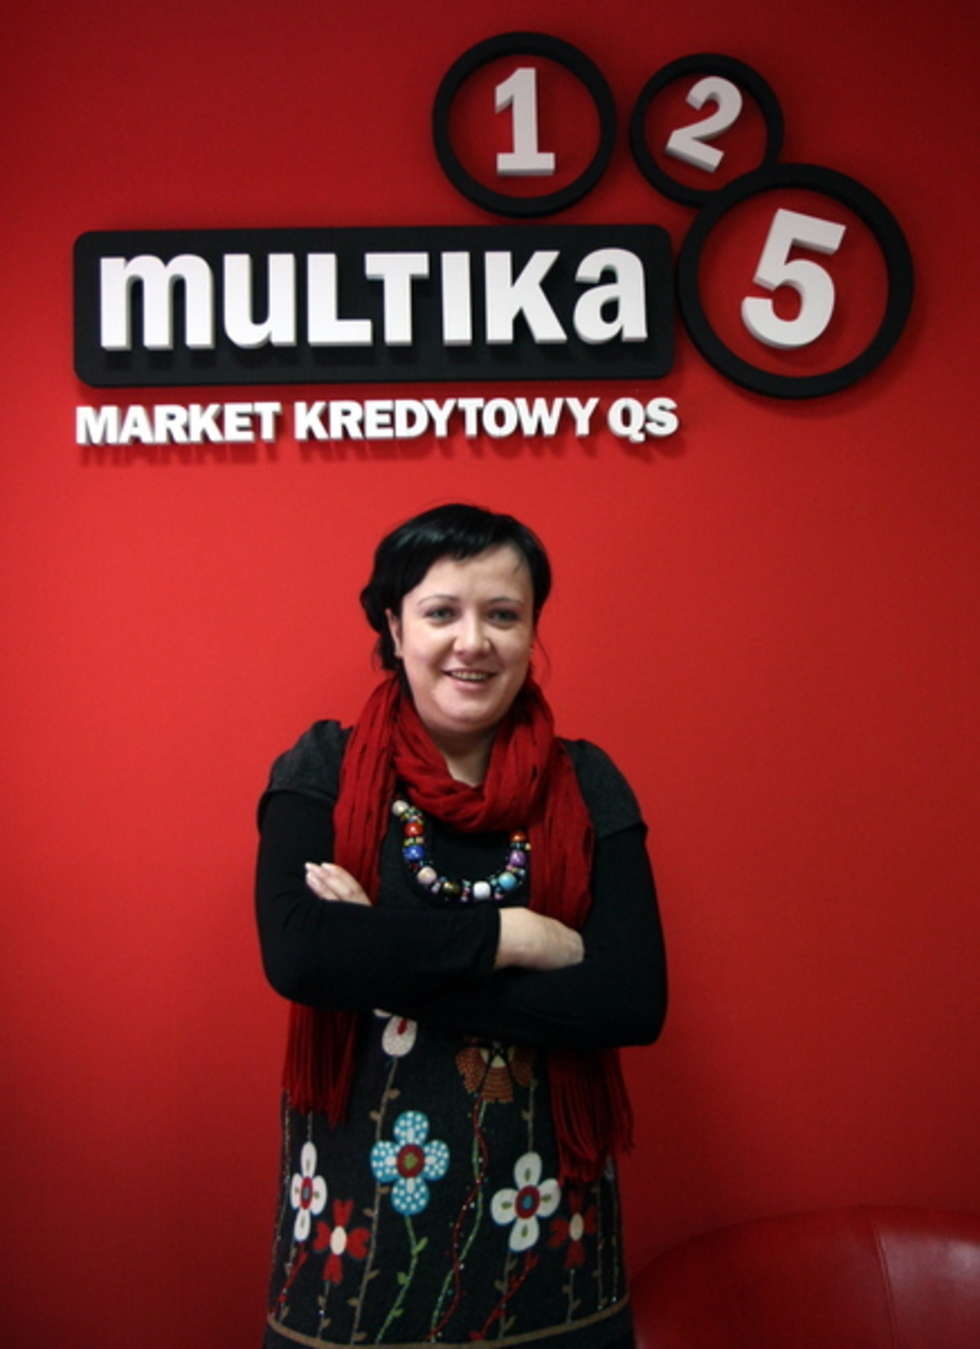  <b> Liberta Chodkiewicz-Wrona </b> prowadzi agencje kredytową w Lublinie. Jeśli chcesz oddac glos na<b> Liberta Chodkiewicz-Wrona </b>wyślij SMS-a o treści <b> DWKOBIETA.12 </b>pod numer 71051. Koszt SMS-a to 1,22 zl z VAT